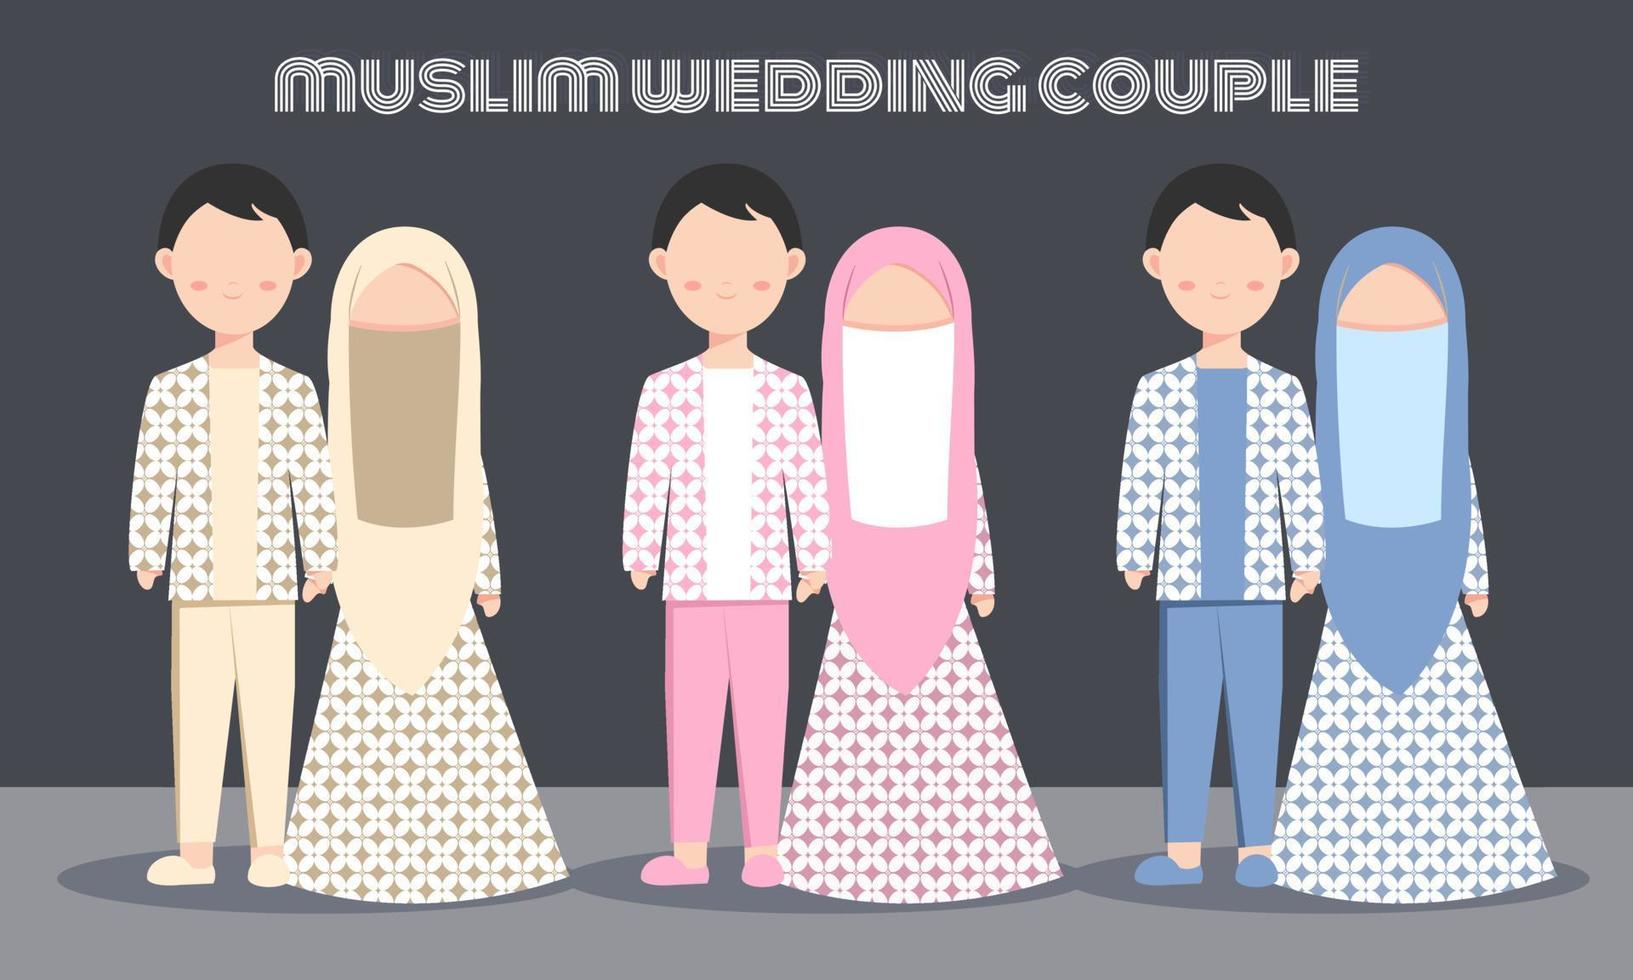 simpatico set di caratteri di coppia musulmana con abito batik per biglietto d'invito per matrimonio o fidanzamento. illustrazione vettoriale in cartone animato di una coppia innamorata